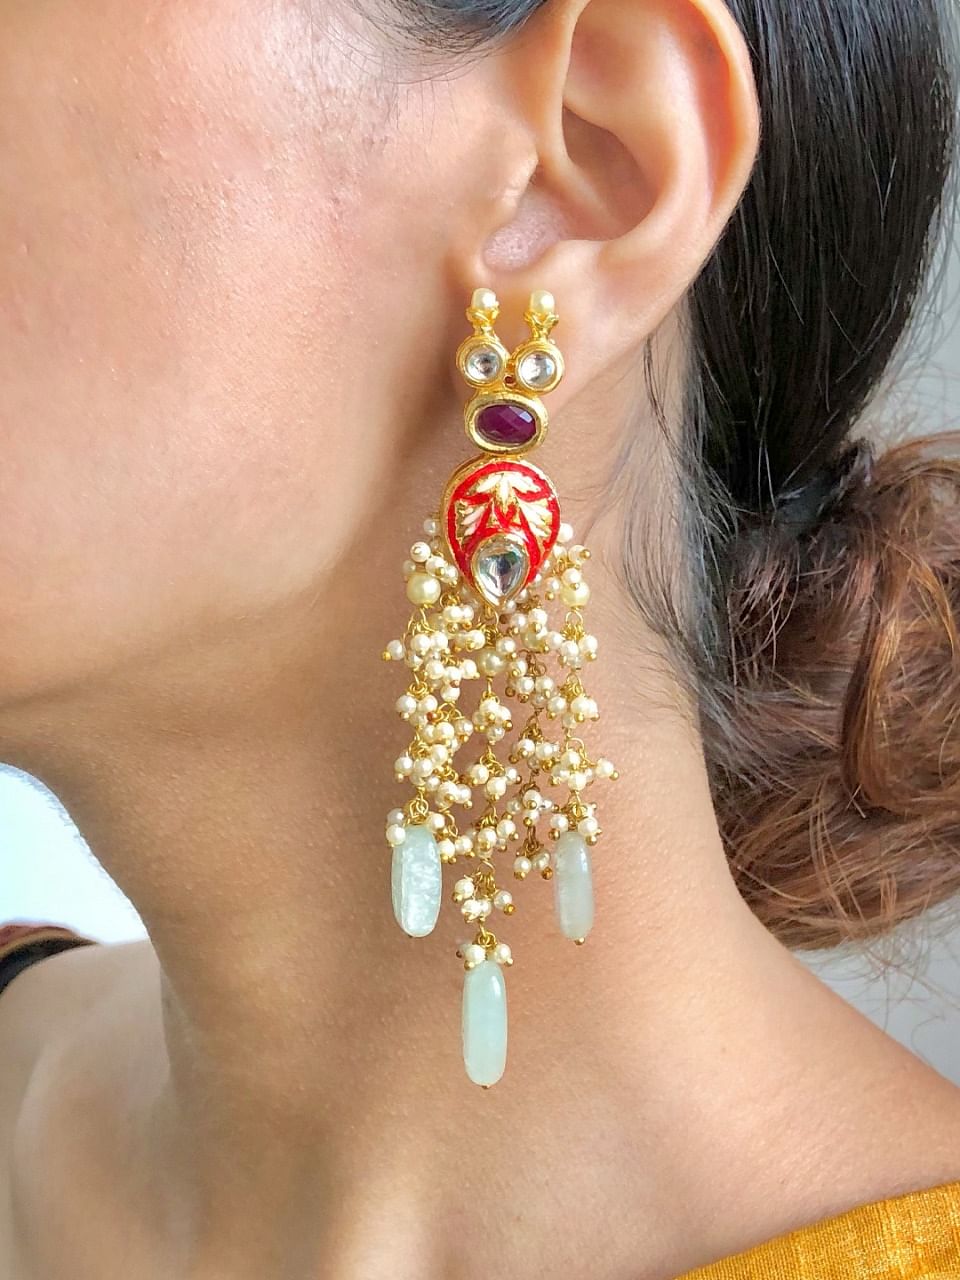 Red Coral Chandelier Earrings Teardrop 925 Sterling Silver Tibetan Silver  Women Jewelry - Etsy